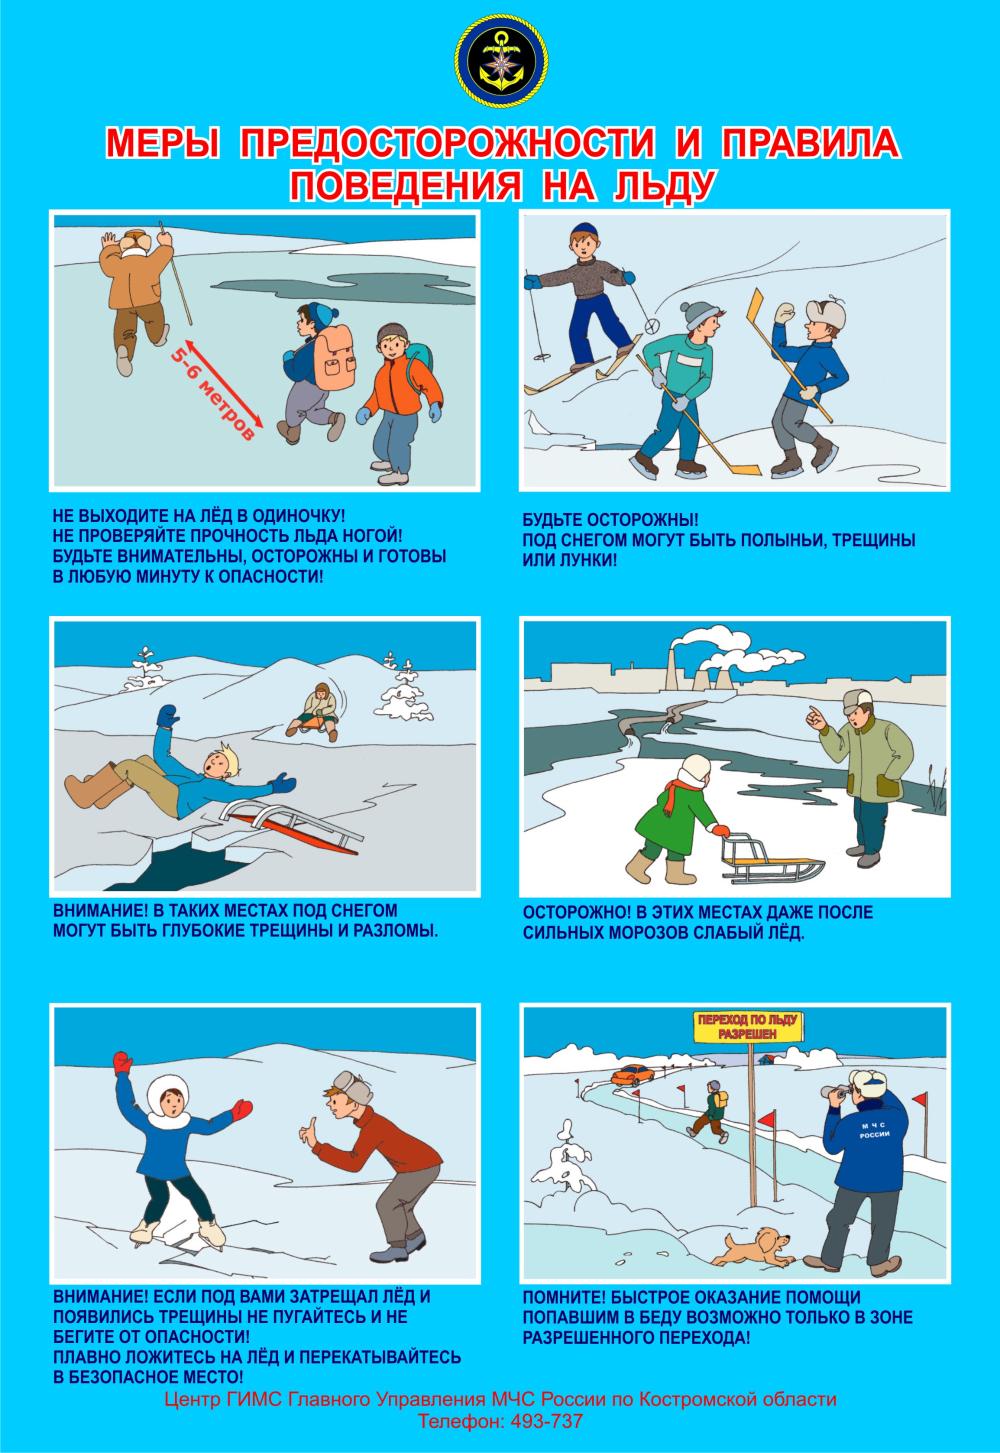 Меры предосторожности на льду